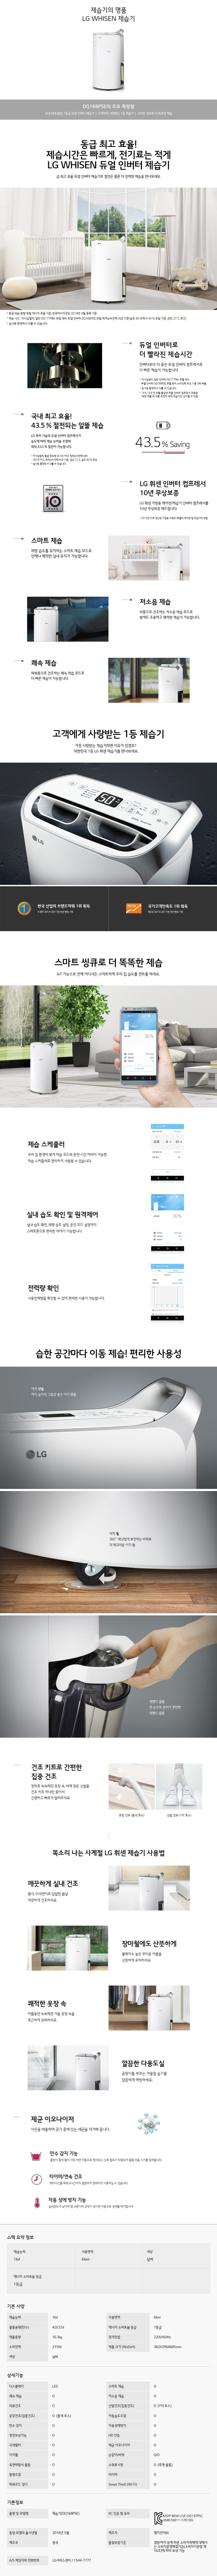 딜라이브 - LG 휘센 제습기 20평형 (DQ168PSE) 상세보기